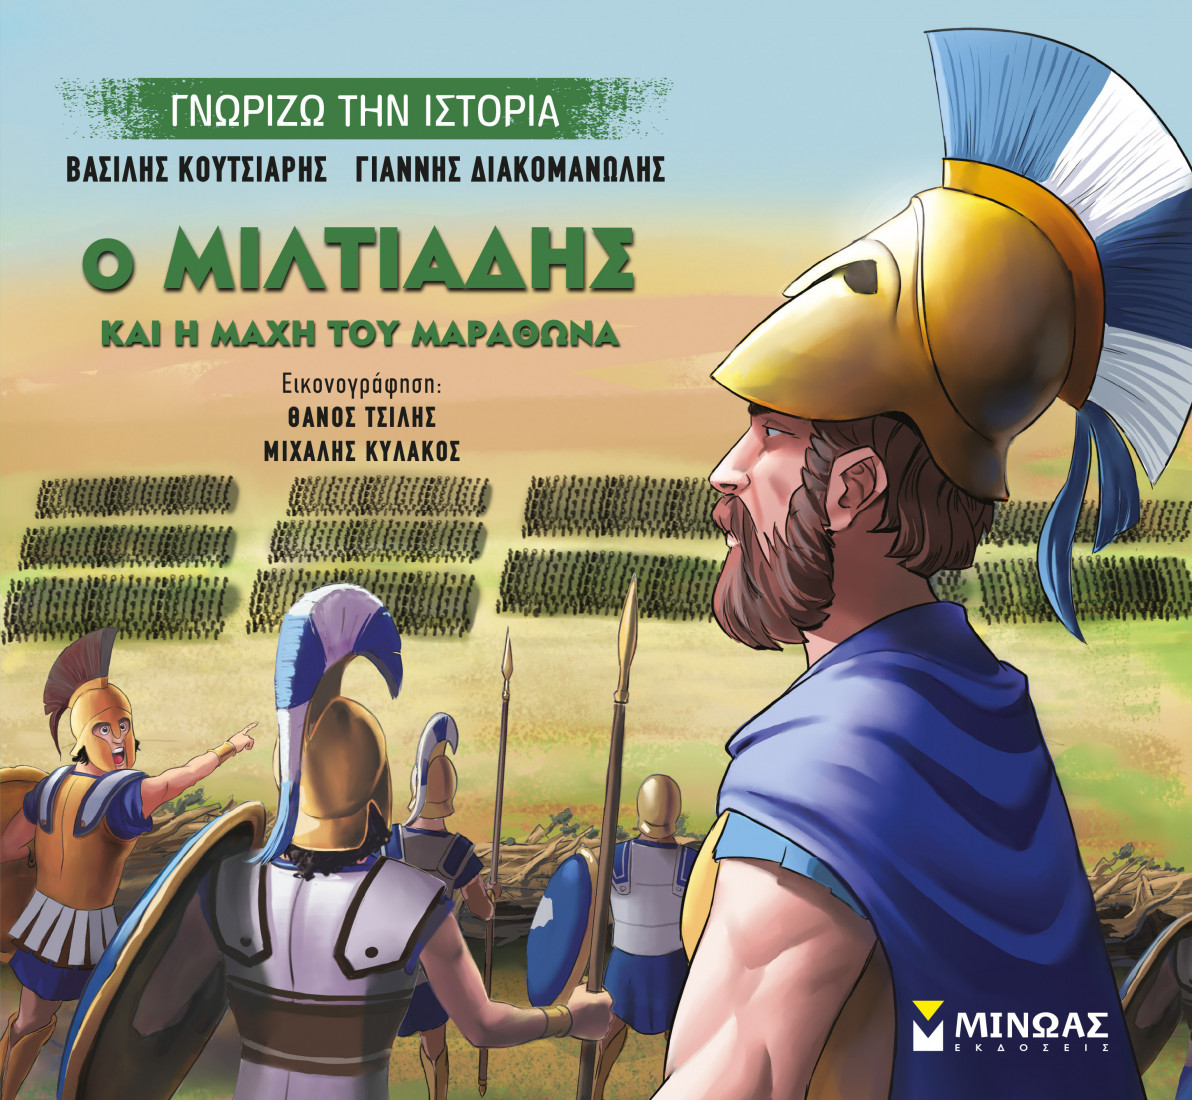 Γνωρίζω την ιστορία: Ο Μιλτιάδης και η μάχη του Μαραθώνα